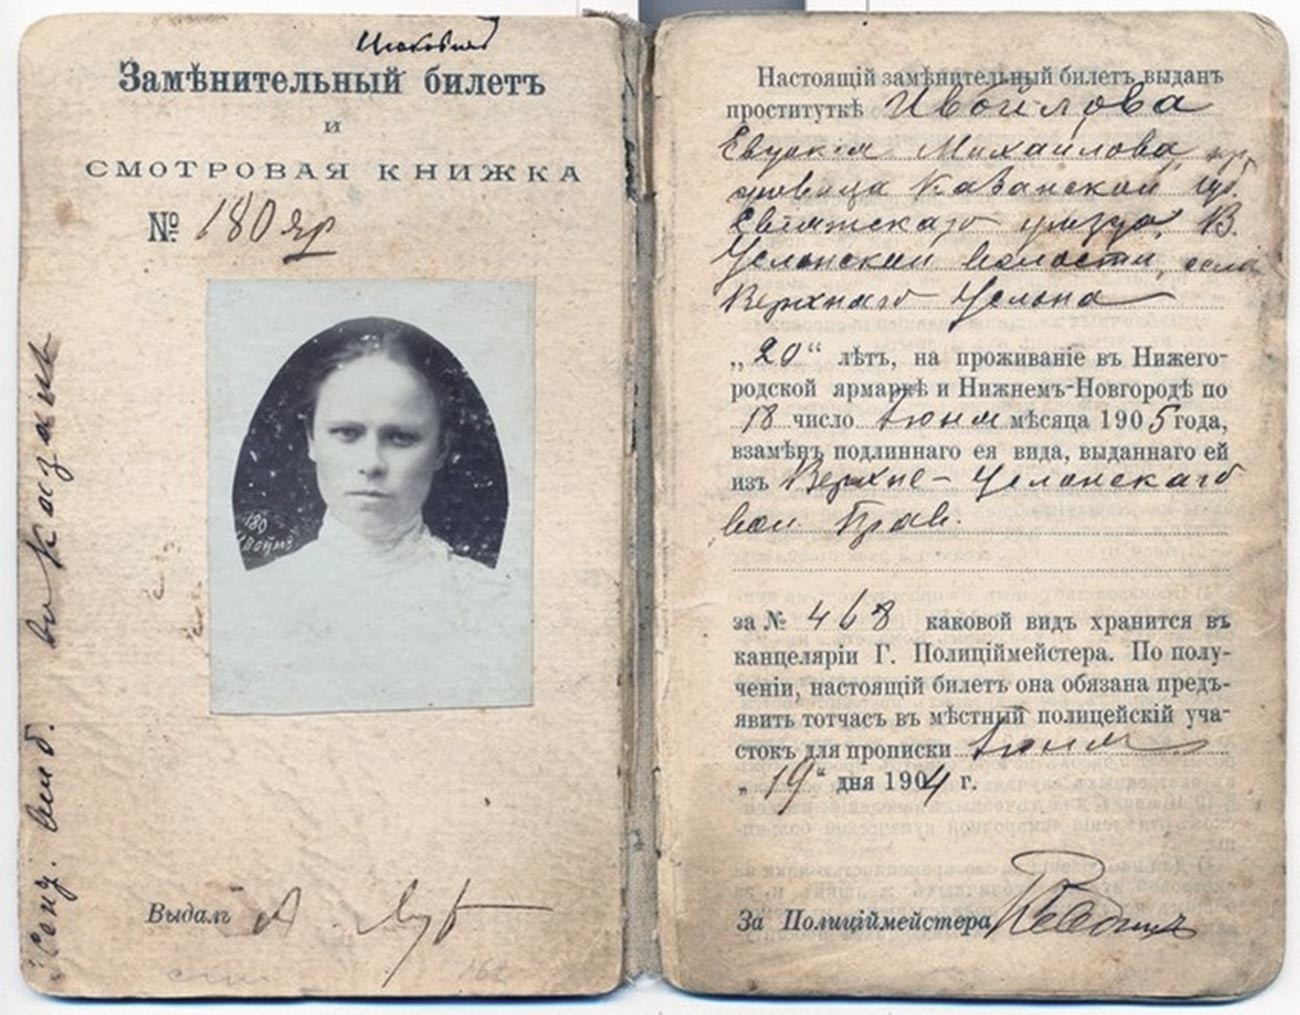 Легитимација на „продавачка на љубов“ со дозвола за работа на панаѓурот во Нижни Новгород, 1904-1905 година.